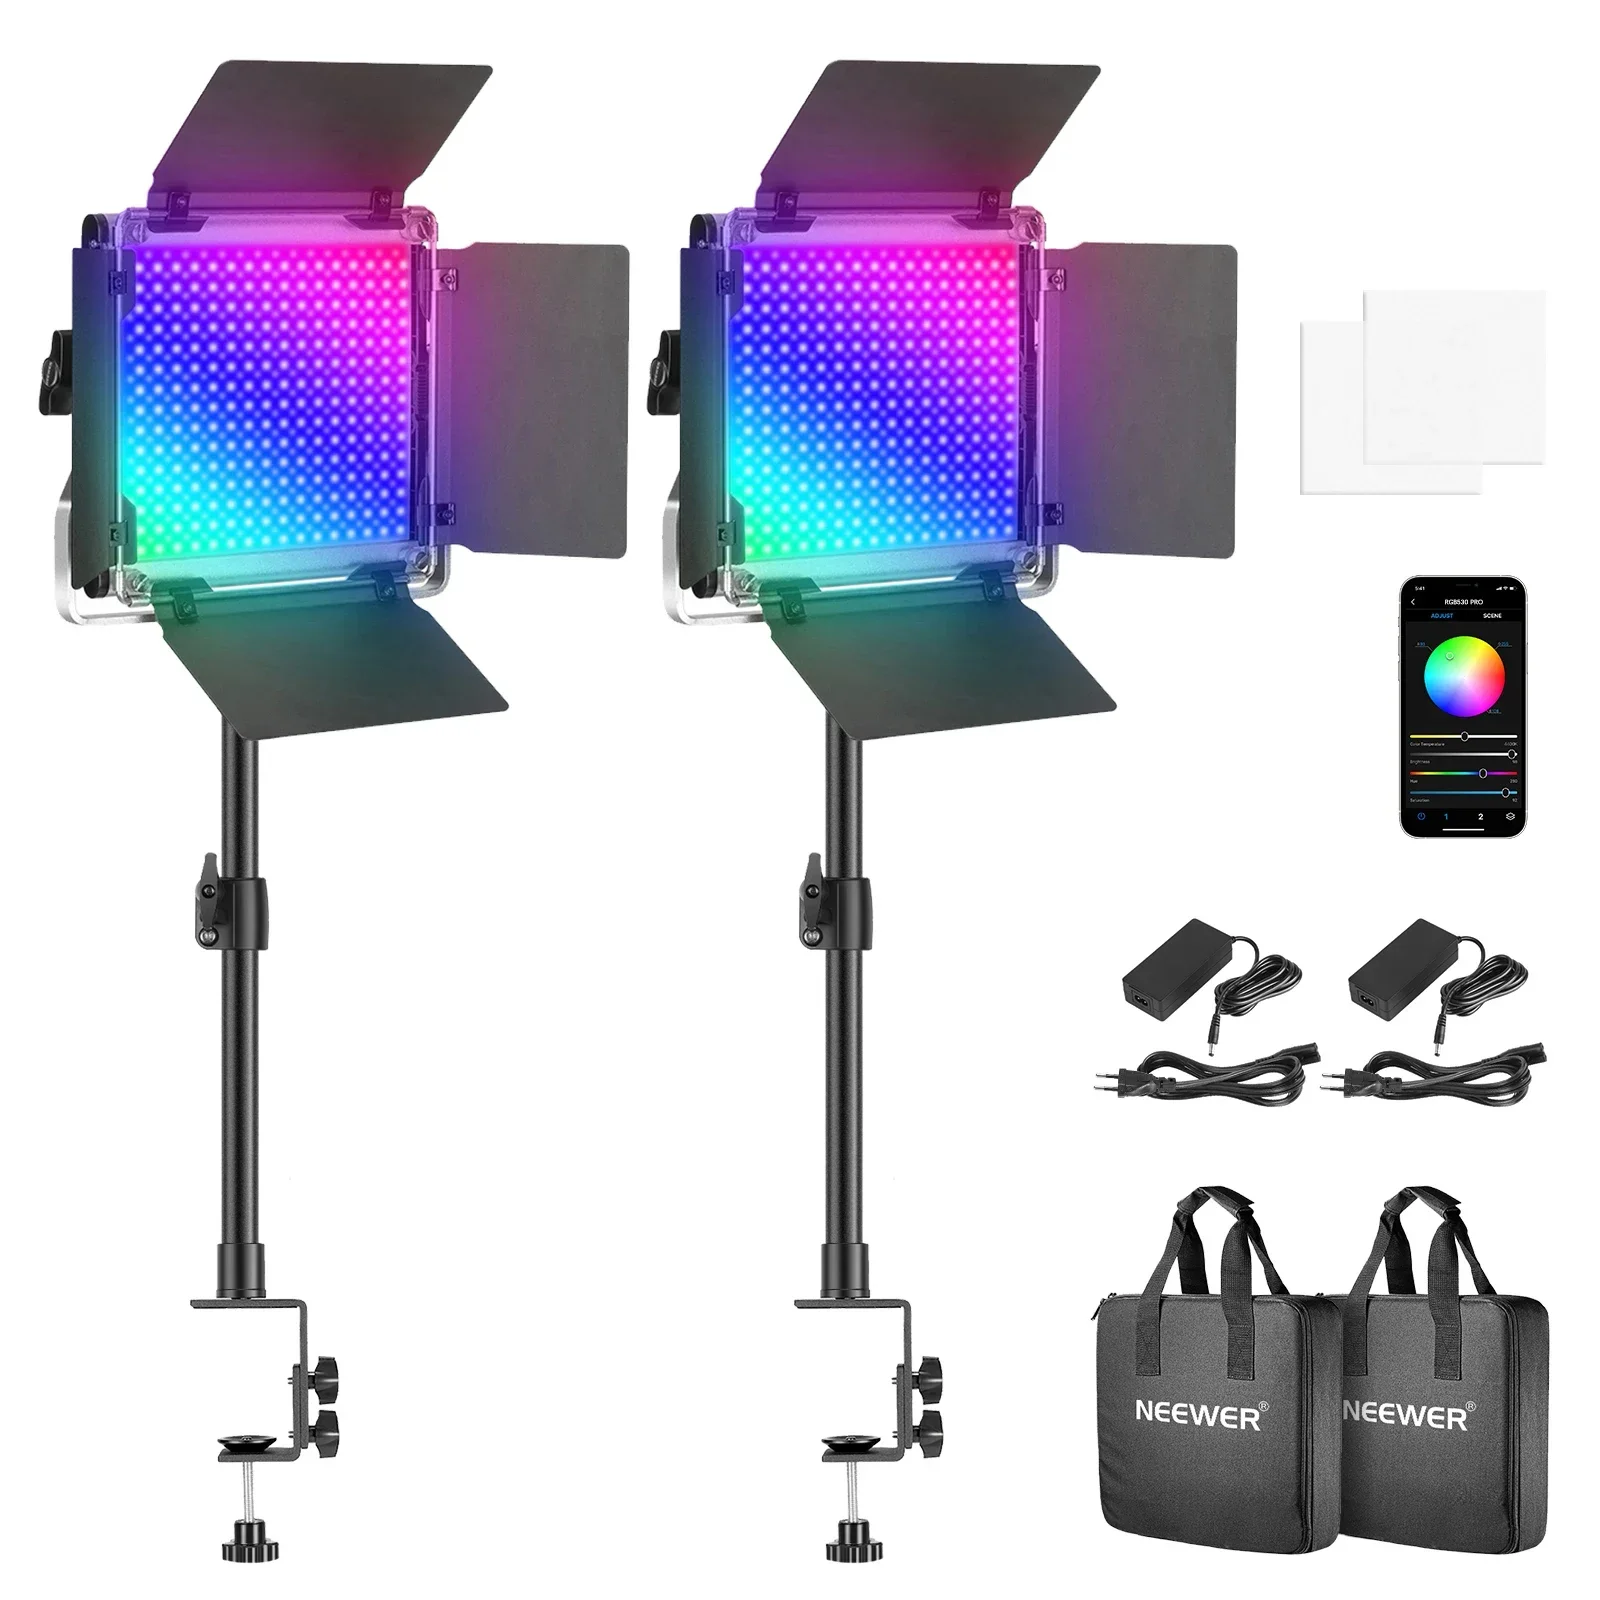 

Neewer 2-Pack 530 PRO RGB Светодиодная лампа для видеосъемки с управлением через приложение, CRI 97 + для потоковой передачи, Зума, YouTube, видеоконференции, фотографии